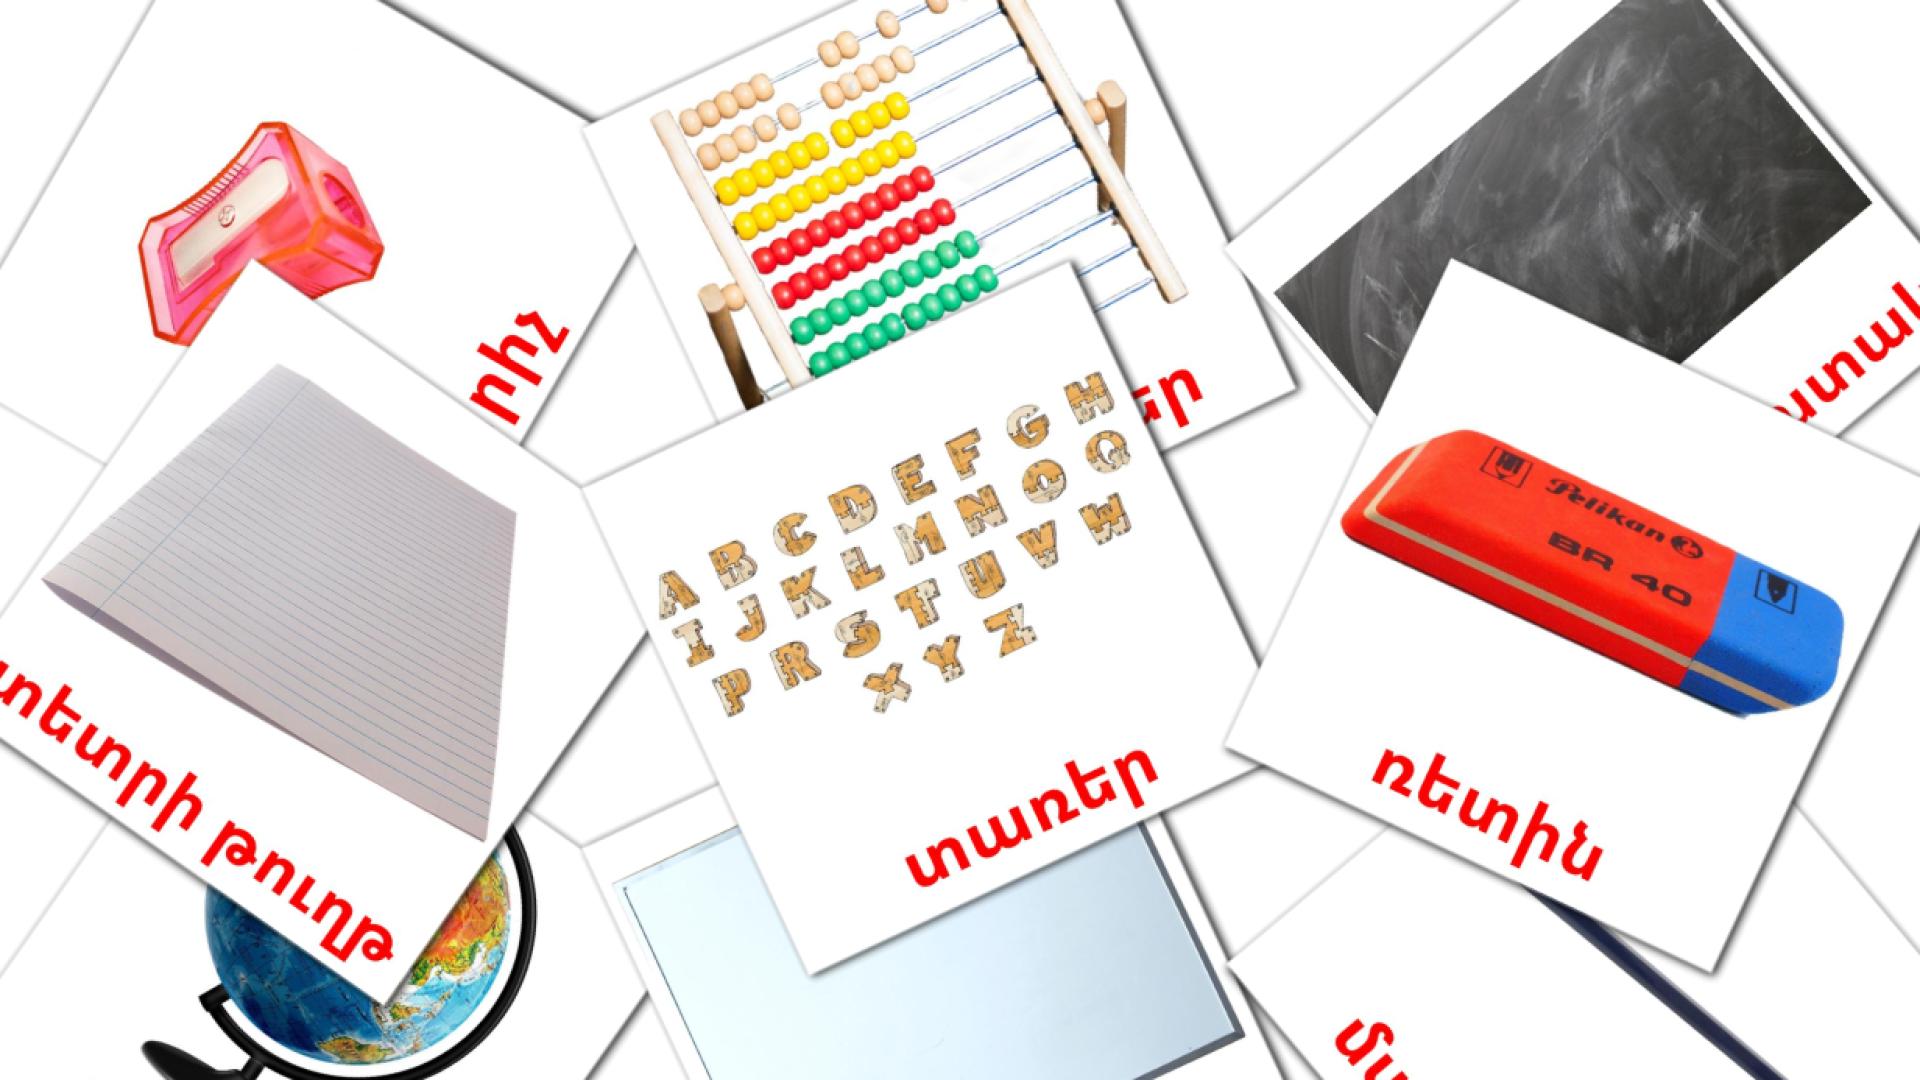 Objetos de sala de aula - Cartões de vocabulário armênio